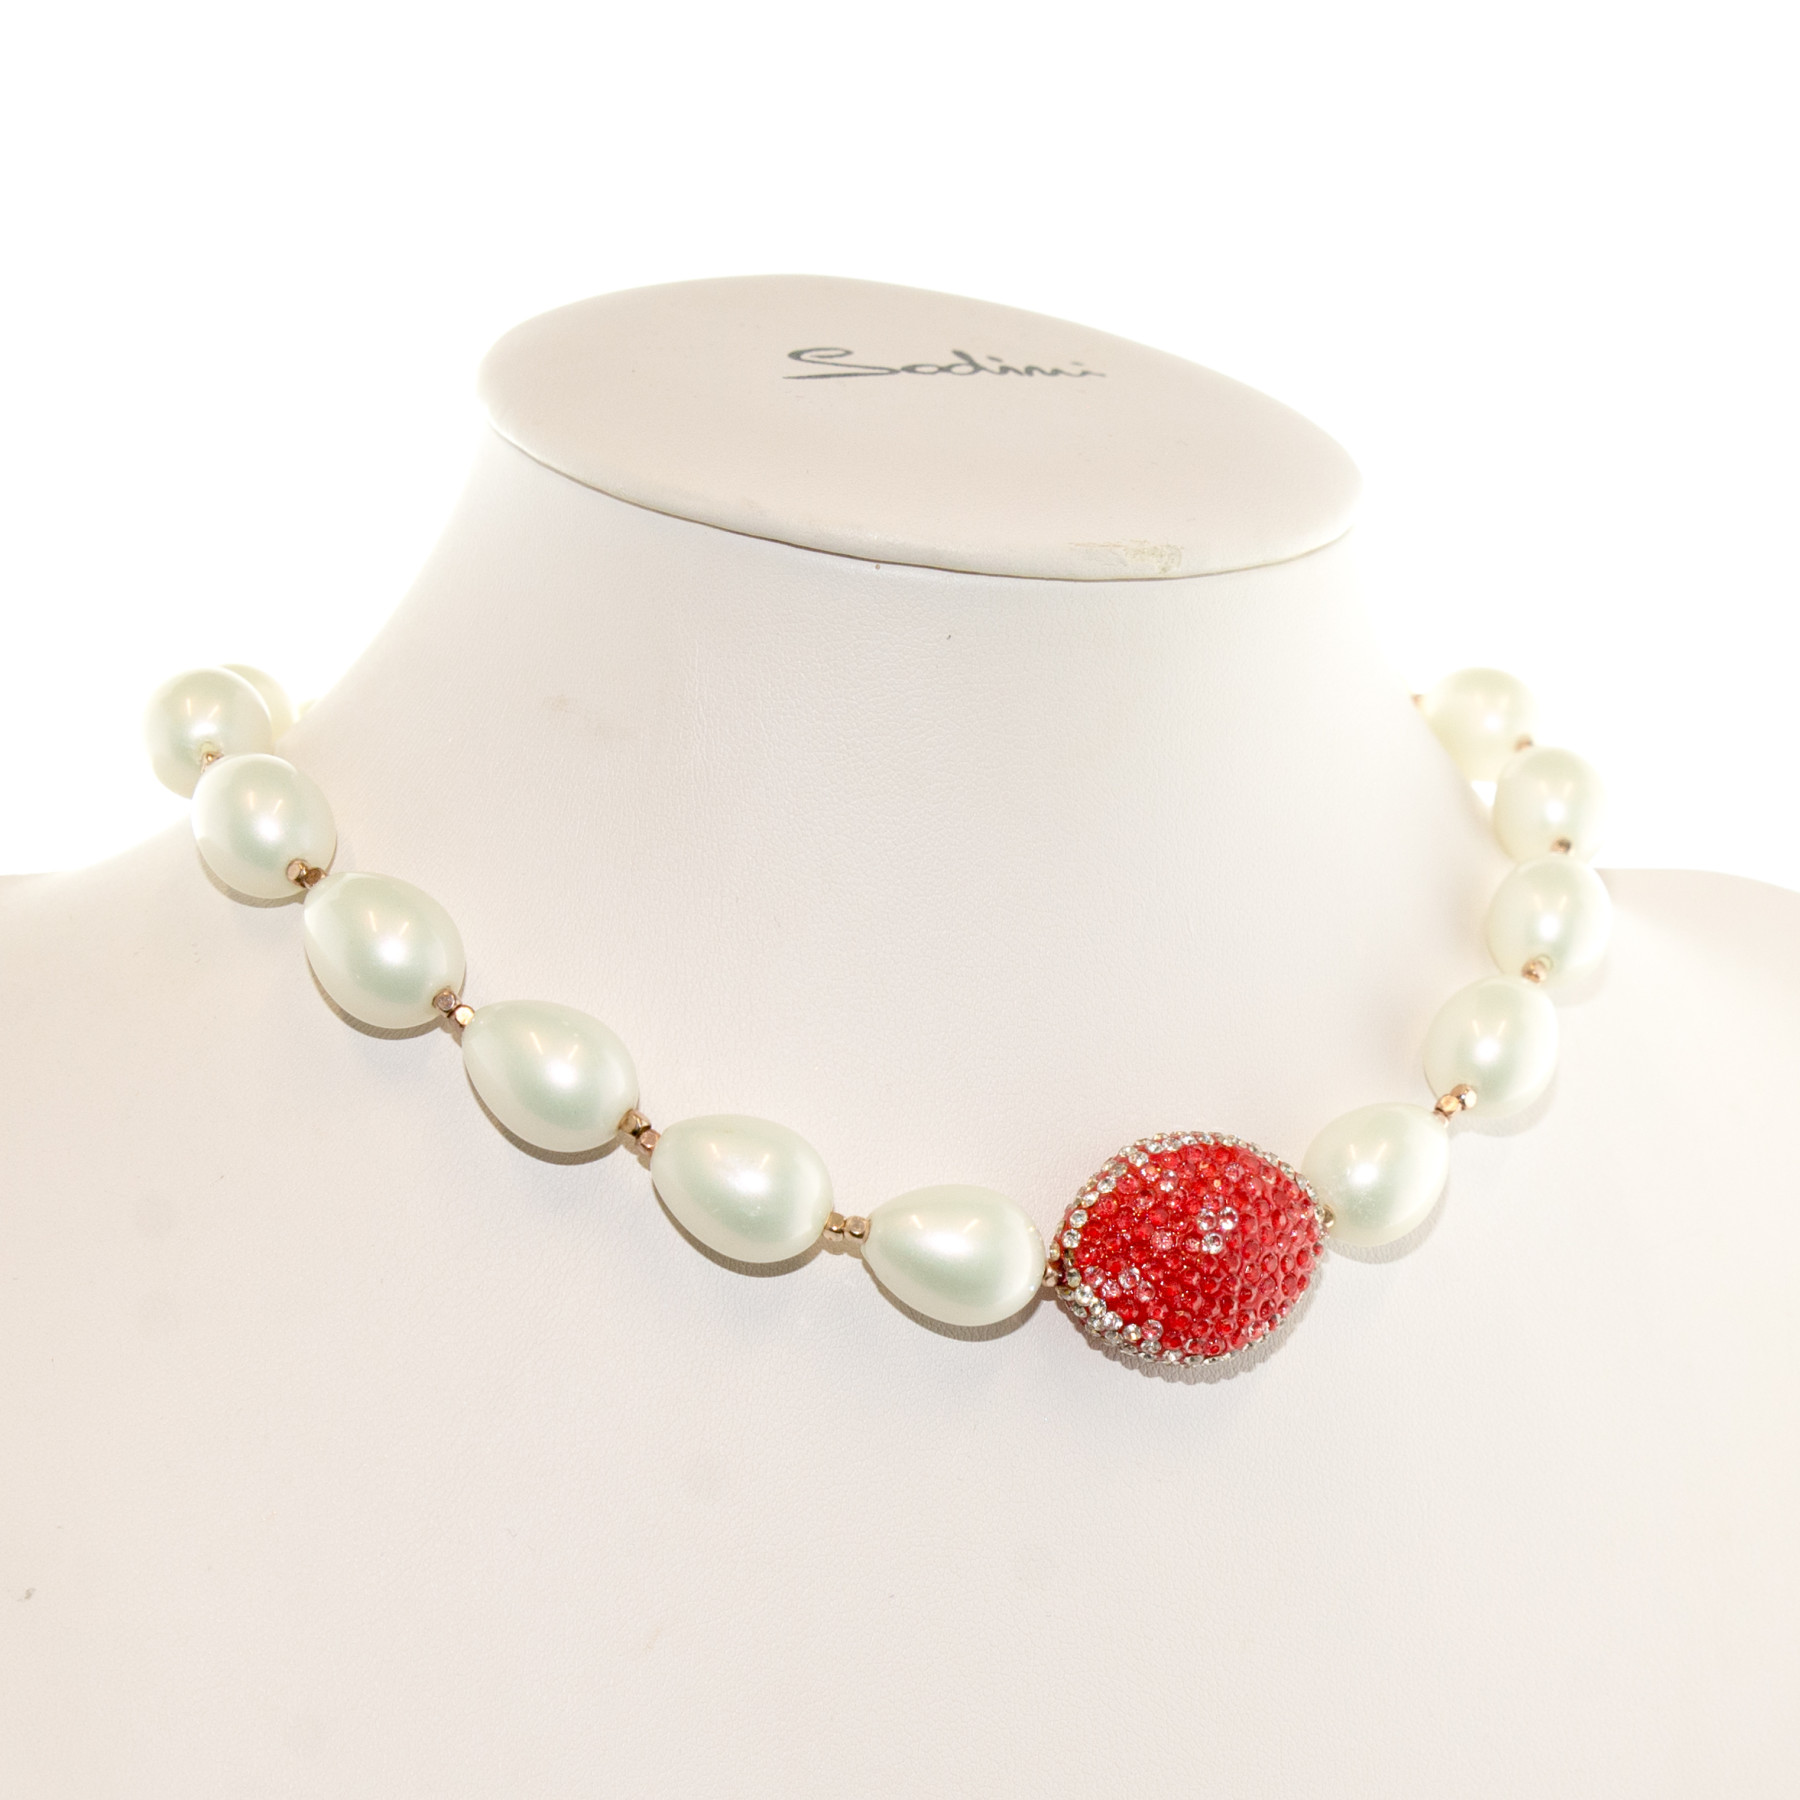 Collana girocollo di perle e ovale rosso con cristalli